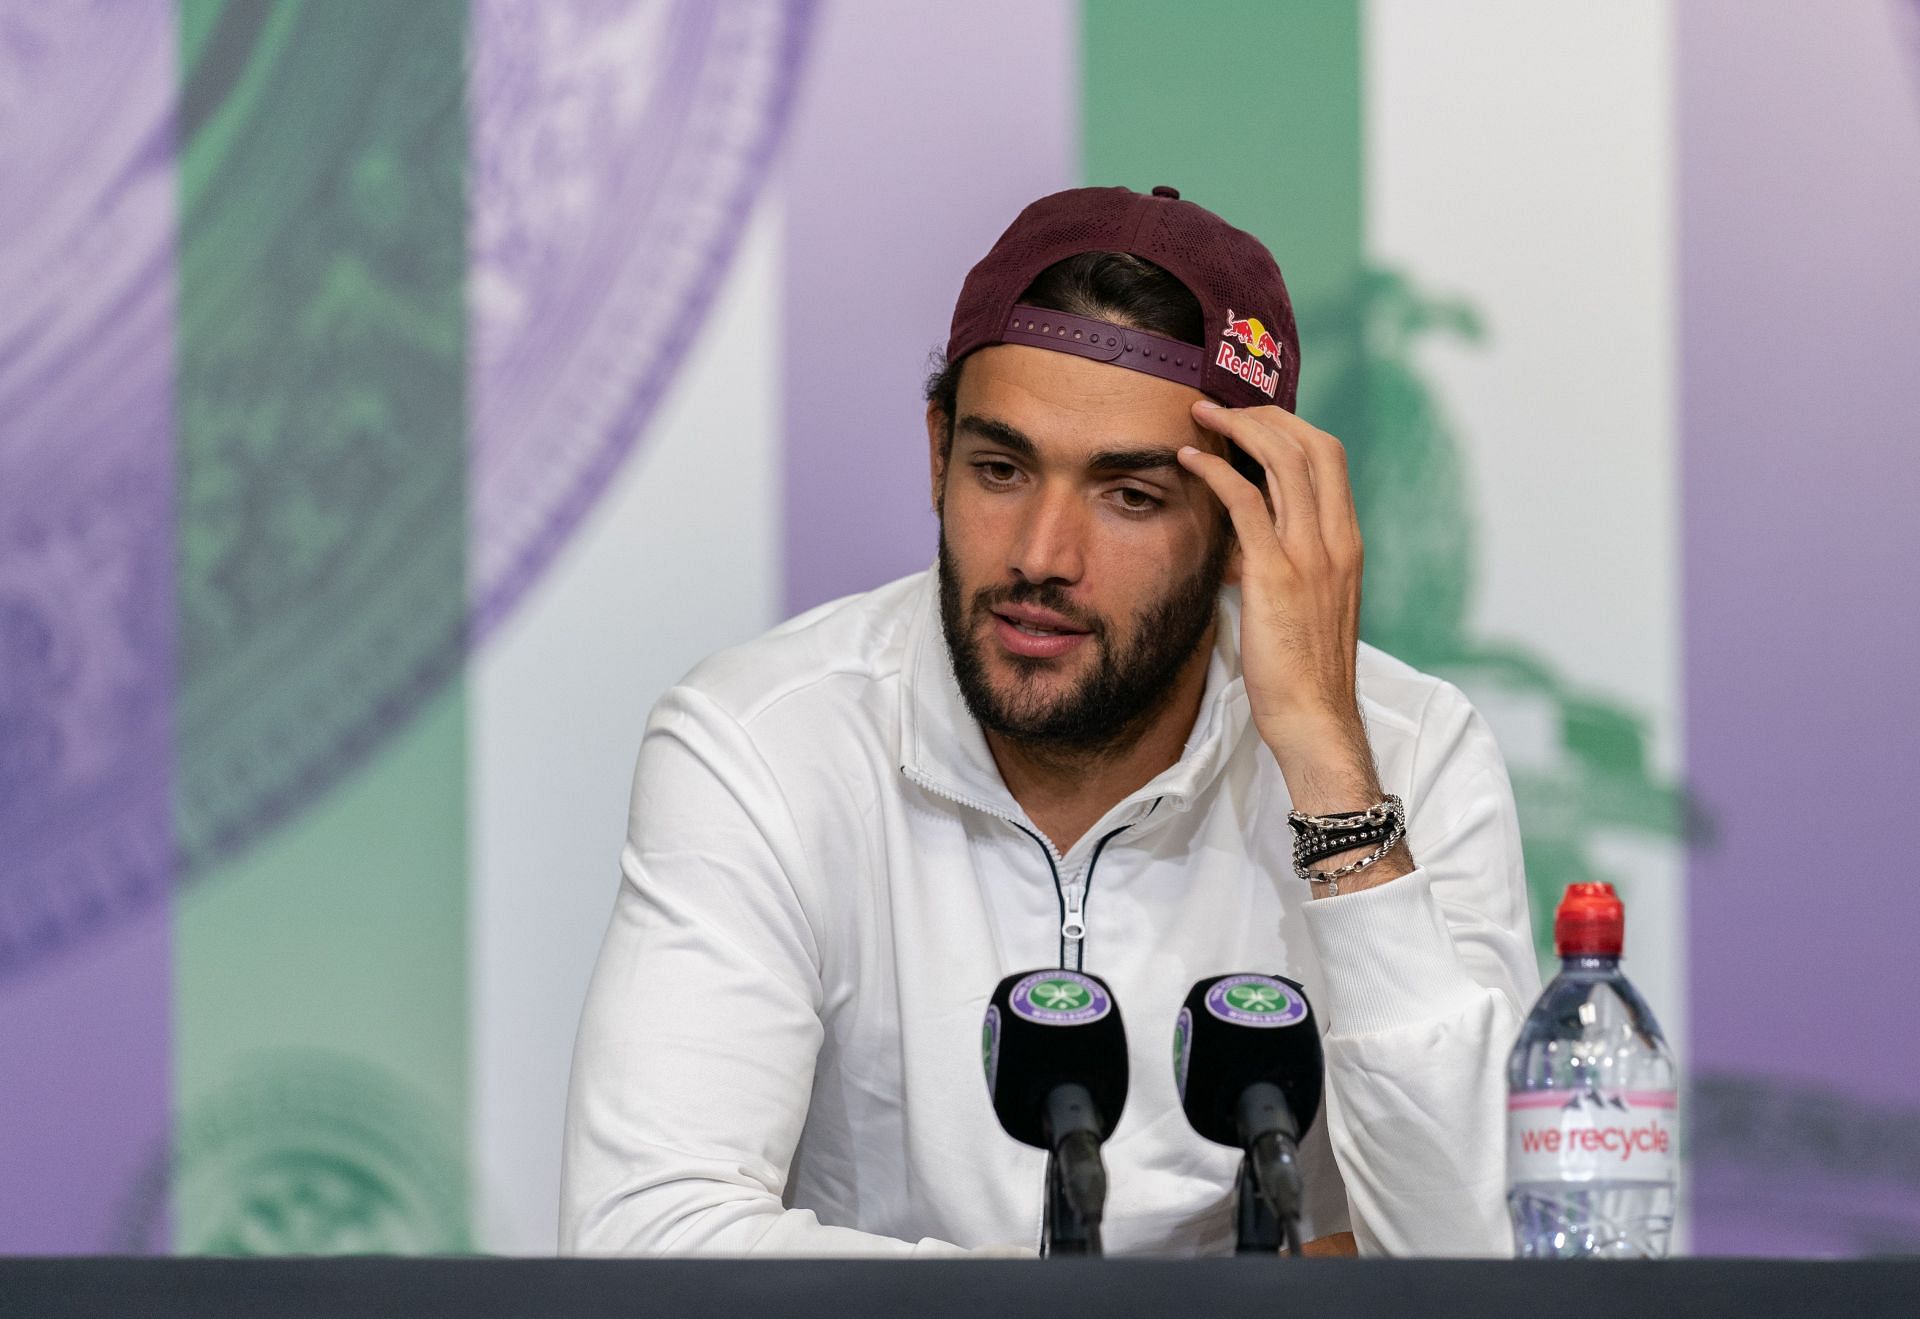 Matteo Berrettini at the 2021 Wimbledon Championships